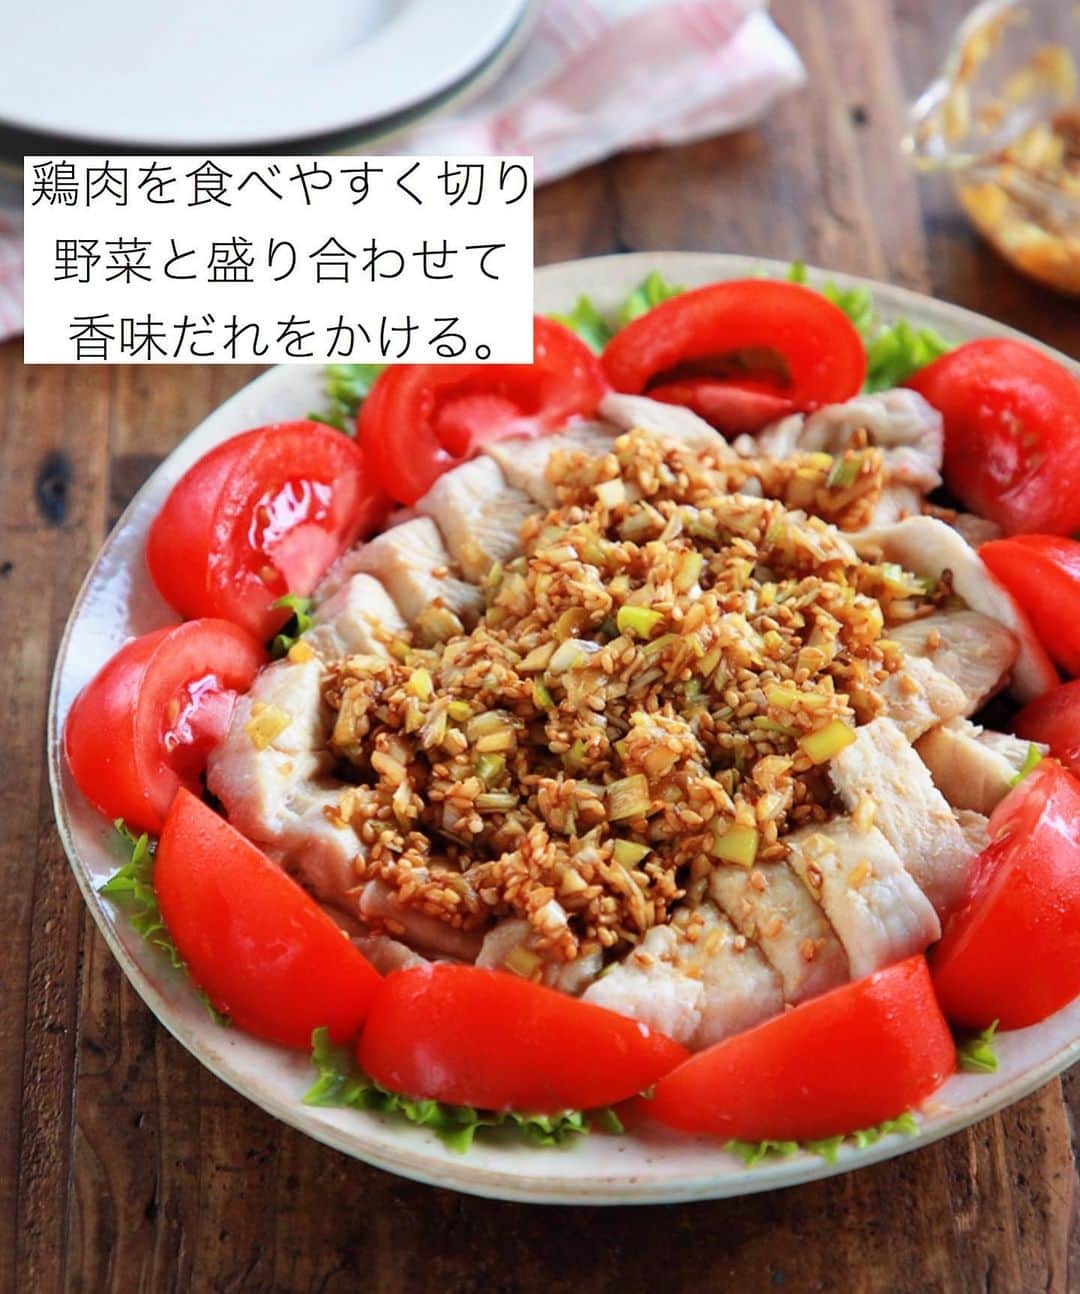 Mizuki【料理ブロガー・簡単レシピ】さんのインスタグラム写真 - (Mizuki【料理ブロガー・簡単レシピ】Instagram)「・﻿ 【レシピ】ーーーーーーーーーーーーー﻿ ♡レンジde簡単！蒸し鶏の香味だれ♡﻿ ーーーーーーーーーーーーーーーーーー﻿ ﻿ ﻿ ﻿ おはようございます(*^^*)﻿ ﻿ 今日は鶏むね肉の節約おかず♩﻿ さっぱりヘルシーなレンジ蒸し鶏に﻿ たっぷり香味だれをかけました♡﻿ 甘酢っぱい香味だれが﻿ 食欲をそそりますよ〜(*´艸`)﻿ ﻿ 蒸し鶏はレンジで一発！﻿ たれは混ぜるだけ！でできるので﻿ よかったらお試し下さいね〜(*^^*)﻿ ﻿ ﻿ ﻿ ーーーーーーーーーーーーーーーーーーーー﻿ 【2人分】﻿ 鶏むね肉...大1枚(300g)﻿ ●砂糖...小1/2﻿ ●塩...小1/4﻿ ●酒...大1﻿ ☆長ねぎ(みじん切り)...10cm﻿ ☆生姜(みじん切り)...1/3かけ﻿ ☆醤油・酢・ごま...各大1.5﻿ ☆砂糖・ごま油...各大1/2﻿ レタス・トマト...各適量﻿ ﻿ 1.鶏肉は身の厚い部分を開いて全体をフォークで刺し、耐熱皿に入れて●を上から順番に揉み込む。ふんわりラップして600Wのレンジで5分加熱し、そのまま庫内に5分置く。﻿ 2.☆を合わせて香味だれを作る。﻿ 3.1の粗熱が取れたら食べやすく切る。ちぎったレタス、くし切りにしたトマトと盛り合わせ、2をかける。﻿ ーーーーーーーーーーーーーーーーーーーー﻿ ﻿ ﻿ ﻿ 《ポイント》﻿ ♦︎鶏肉は厚みが均等になるように開いて下さい♩﻿ ♦︎蒸し鶏は粗熱が取れるまで置いておくとしっとりします♩完全に冷ましても◎﻿ ﻿ ﻿ ﻿ ﻿ ﻿ ﻿ ﻿ ＿＿＿＿＿＿＿＿＿＿＿＿＿＿＿＿＿﻿ 🎀6刷重版しました🎀﻿ 混ぜて焼くだけ。はじめてでも失敗しない！﻿ 【#ホットケーキミックスのお菓子 】﻿ ﻿ 一冊まるっとホケミスイーツ♩﻿ 普段のおやつから﻿ 特別な日にも使えるレシピを﻿ この一冊に詰め込みました(*^^*)﻿ ホットケーキミックスを使えば﻿ 簡単に本格的なお菓子が作れますよ♡﻿ ＿＿＿＿＿＿＿＿＿＿＿＿＿＿＿＿＿﻿ ﻿ ﻿ ﻿ ＿＿＿＿＿＿＿＿＿＿＿＿＿＿＿＿＿＿＿﻿ 📕6刷重版しました📕﻿ 簡単・時短！ 毎日のごはんがラクになる﻿ ✨🦋 【 #Mizukiの今どき和食 】🦋✨﻿ ＿＿＿＿＿＿＿＿＿＿＿＿＿＿＿＿＿＿＿﻿ なるべく少ない材料で﻿ 手間も時間も省きながら﻿ 簡単にできるおいしい和食レシピ♩﻿ 簡単に失敗なくマスターできる一冊で﻿ もっと気軽に、カジュアルに﻿ 和食を楽しんで下さいね(*^^*)﻿ ＿＿＿＿＿＿＿＿＿＿＿＿＿＿＿＿＿＿＿﻿ ﻿ ⭐️ストーリー、ハイライト、プロフ画面に﻿ 本のURLを貼らせていただいております♩﻿ →(@mizuki_31cafe )﻿ ﻿ ﻿ ﻿ ﻿ ﻿ #鶏むね肉#香味だれ#レンジ#さっぱり#ヘルシー#Mizuki#簡単レシピ#時短レシピ#節約レシピ#料理#レシピ#フーディーテーブル#マカロニメイト#おうちごはん#デリスタグラマー#料理好きな人と繋がりたい#おうちごはんlover#写真好きな人と繋がりたい#foodpic#cooking#recipe#lin_stagrammer#foodporn#yummy#蒸し鶏の香味だれm」8月6日 7時12分 - mizuki_31cafe